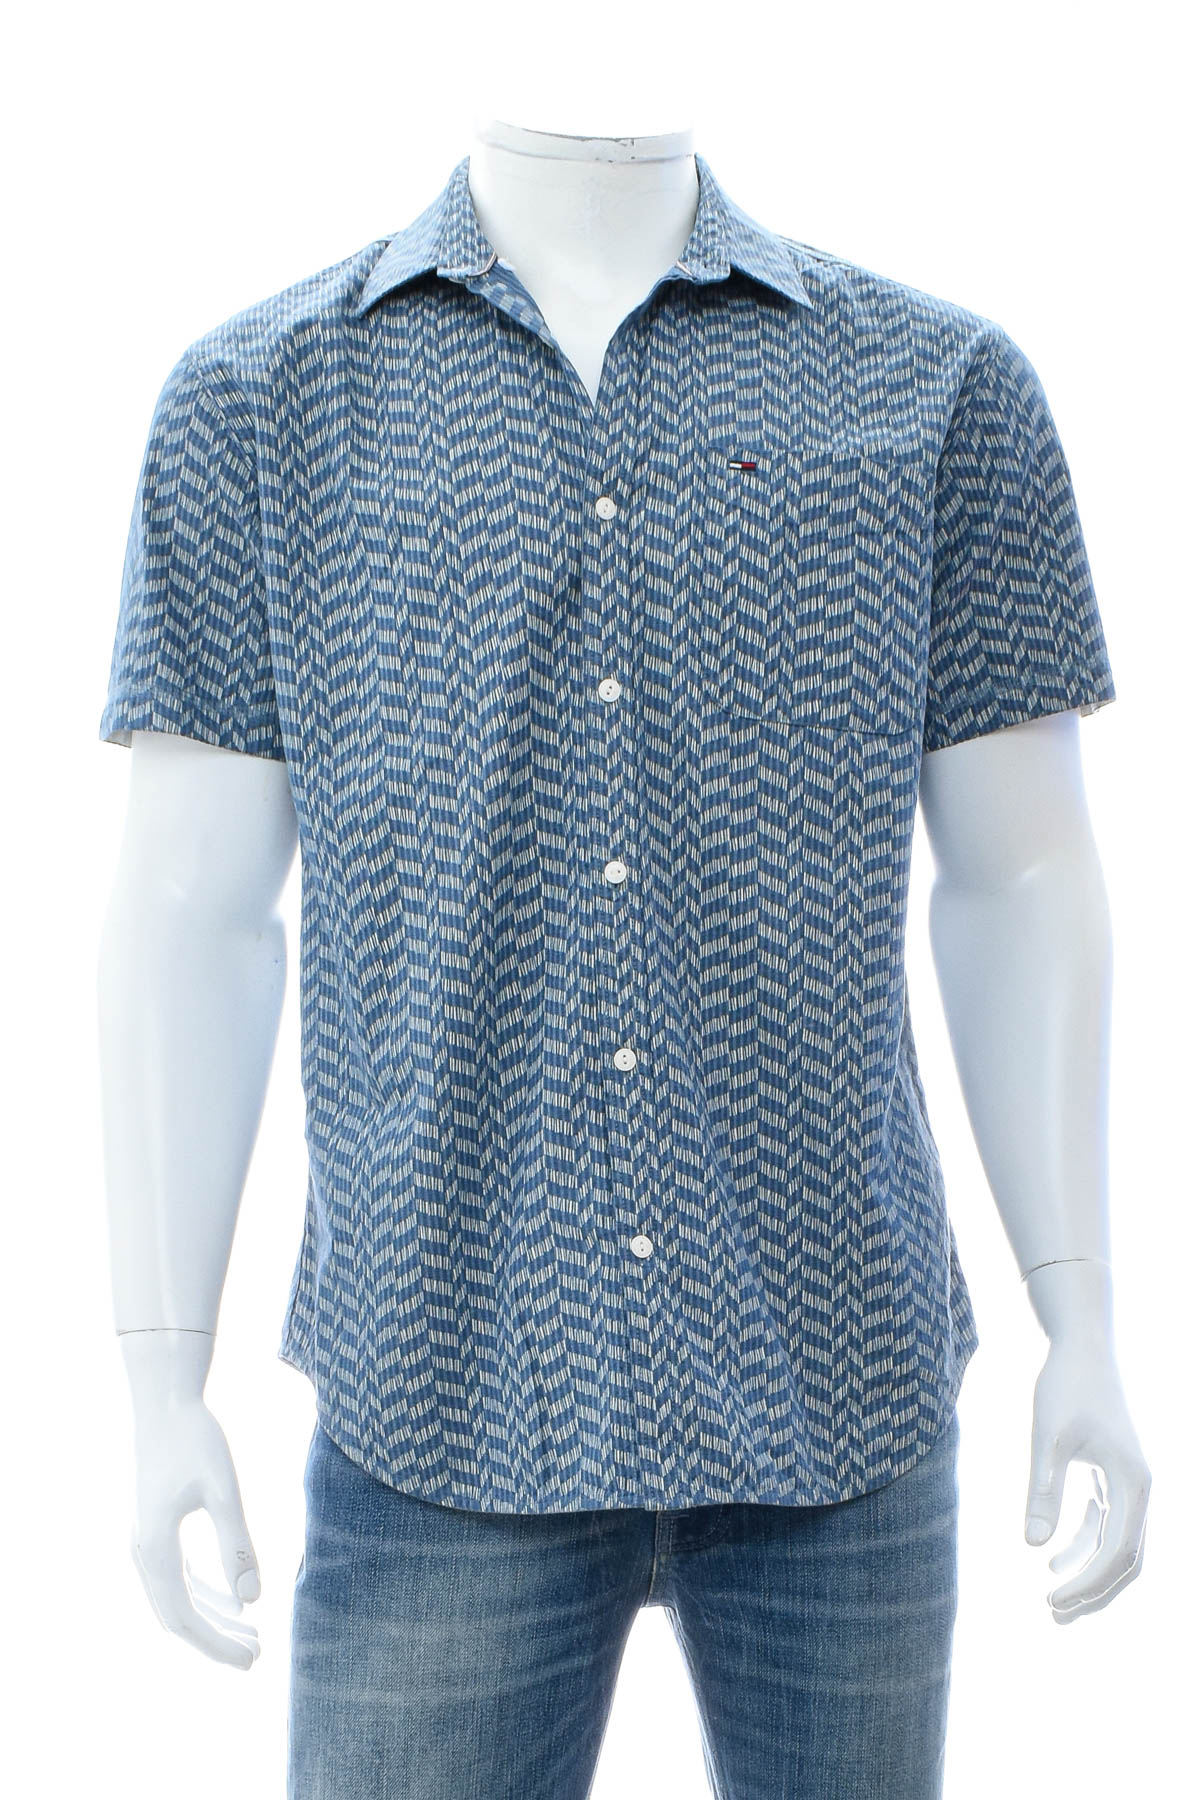 Ανδρικό πουκάμισο - HILFIGER DENIM - 0